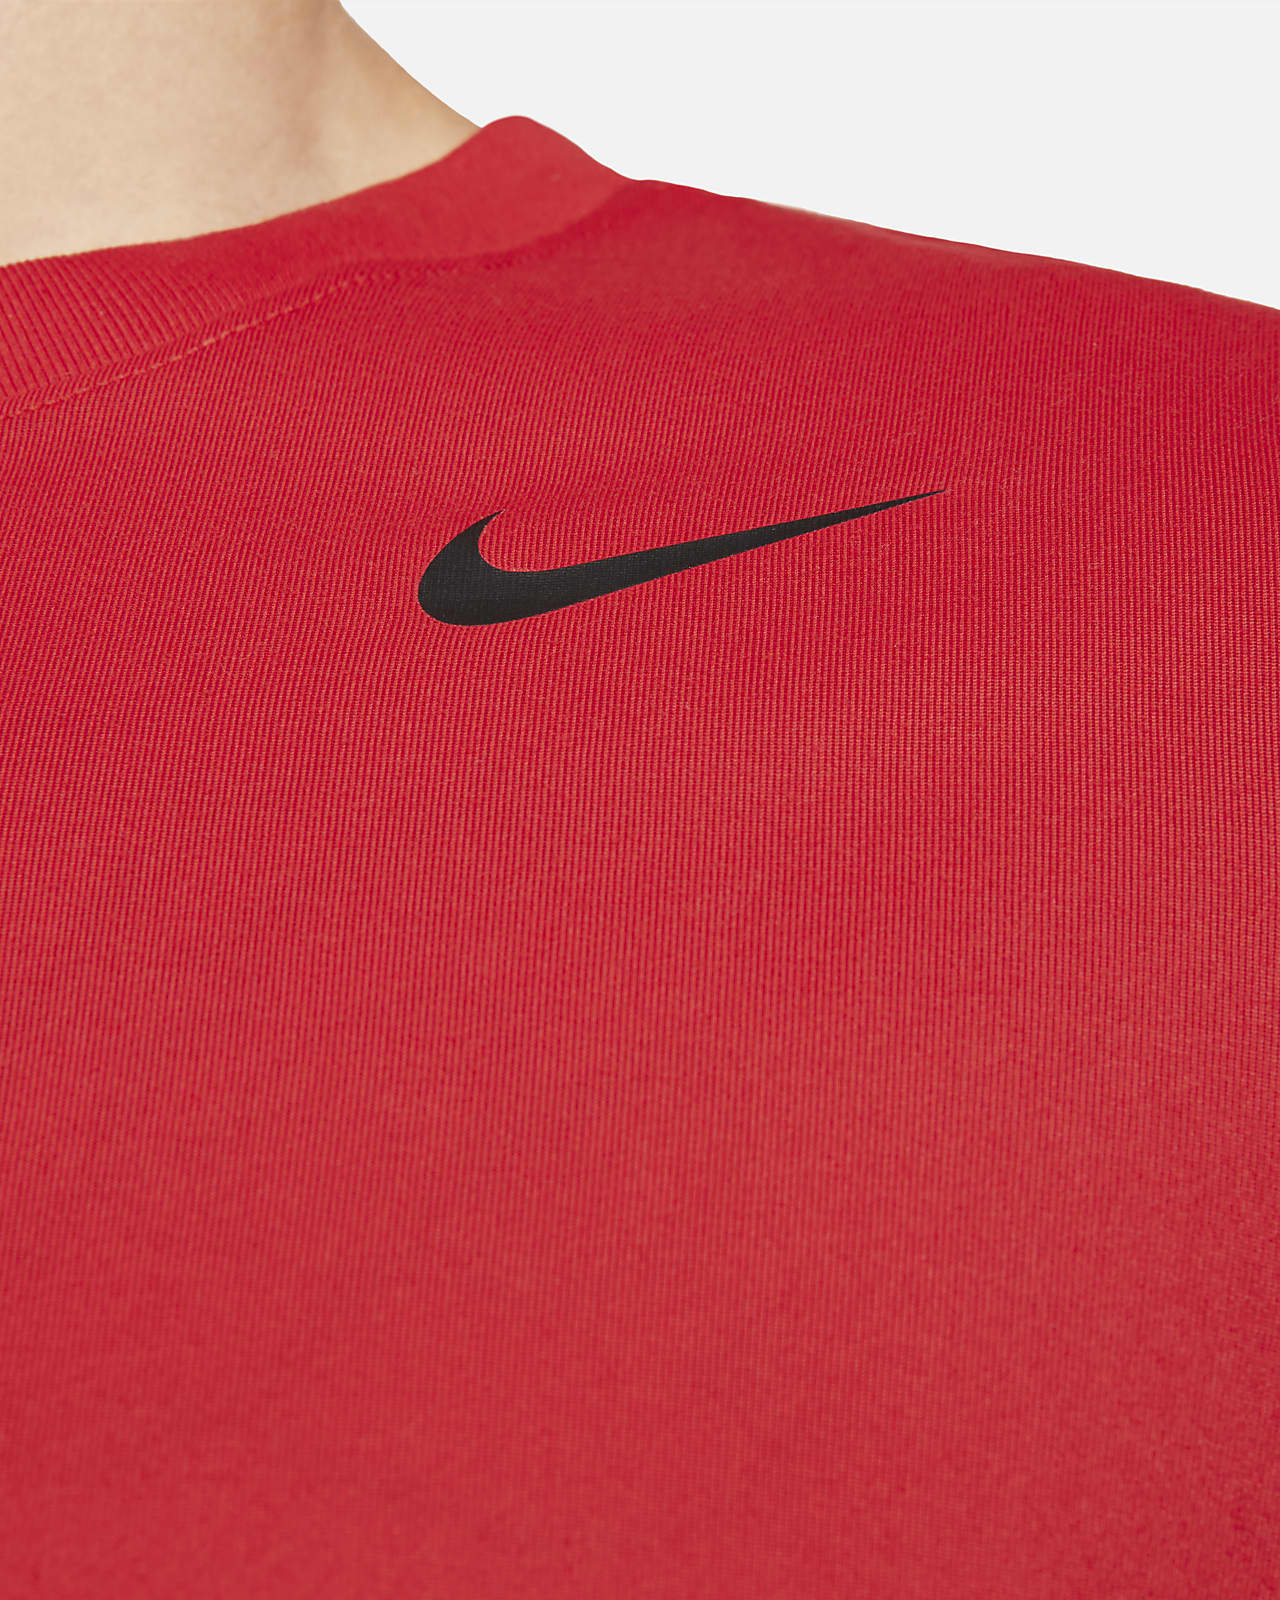 Nike Dri Fit Material | lupon.gov.ph